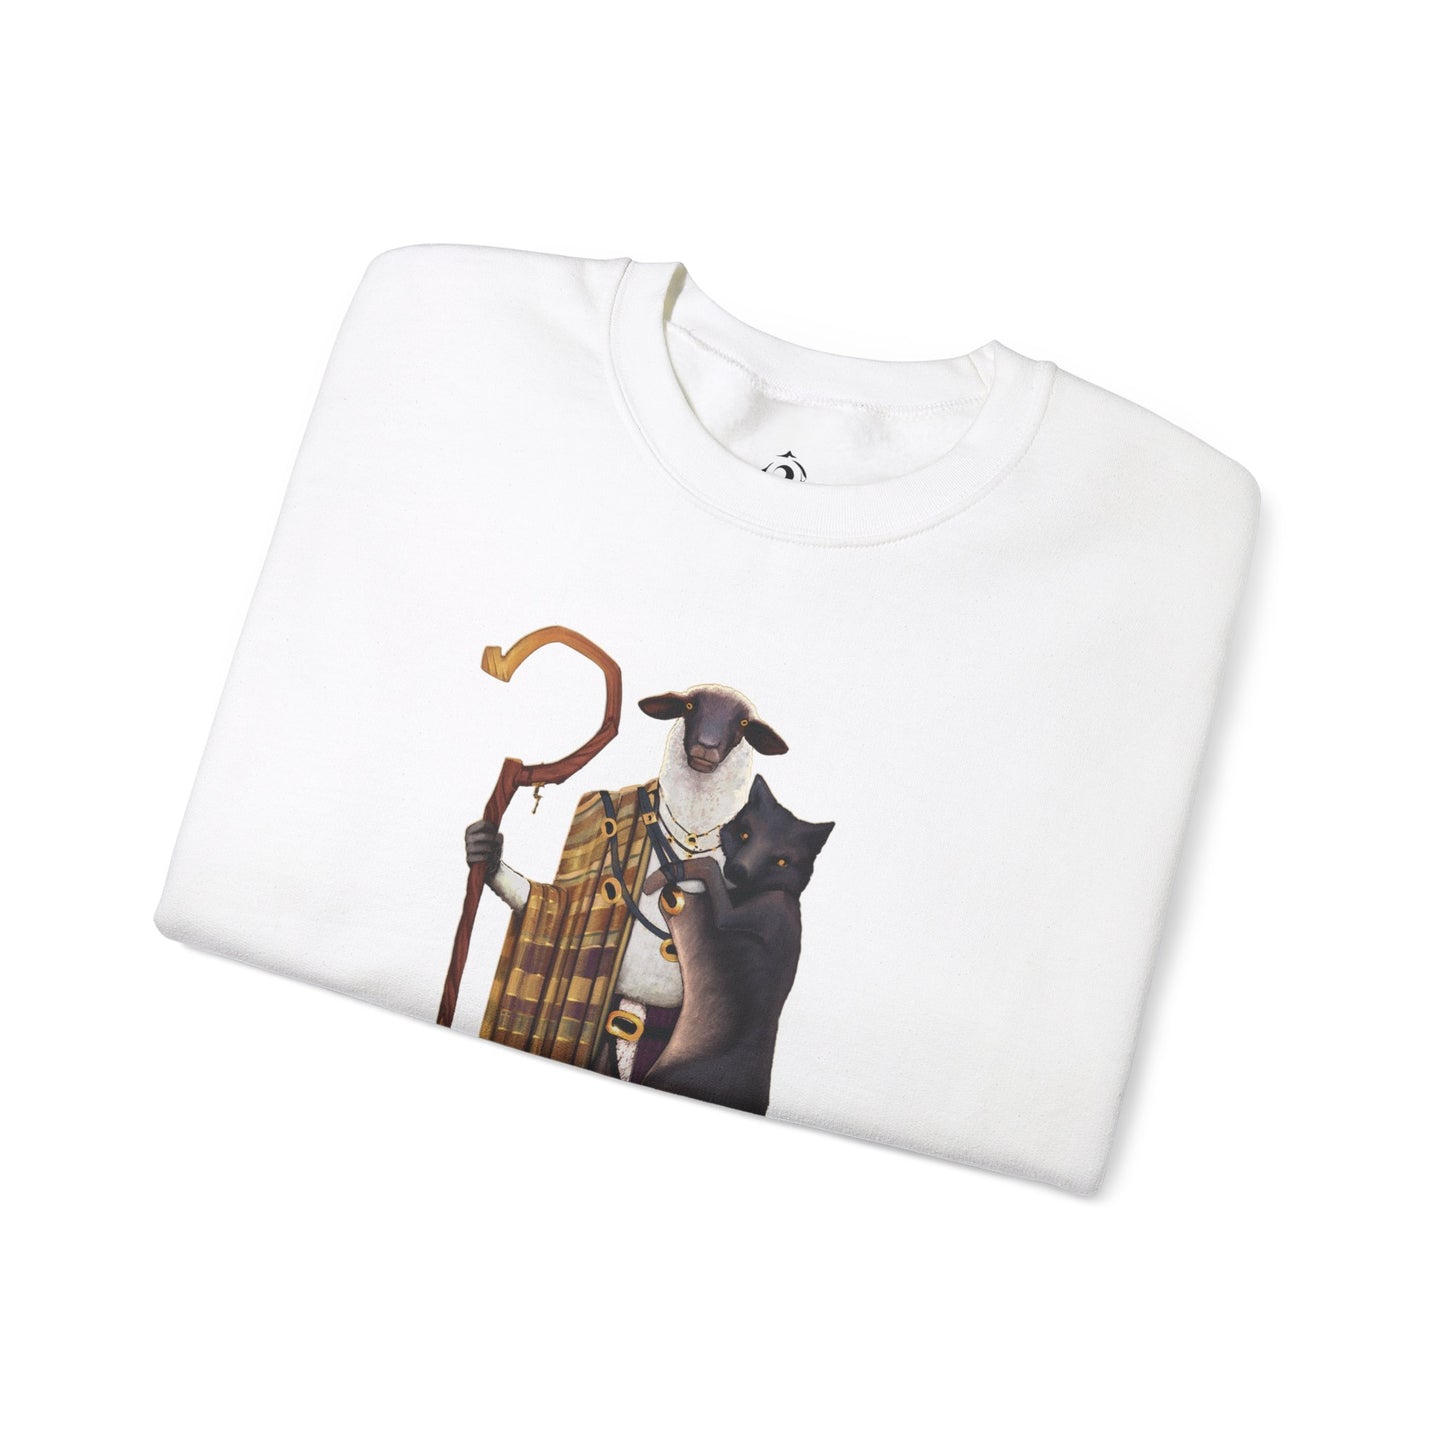 The Good Shepherd | Graphic Sweatshirt